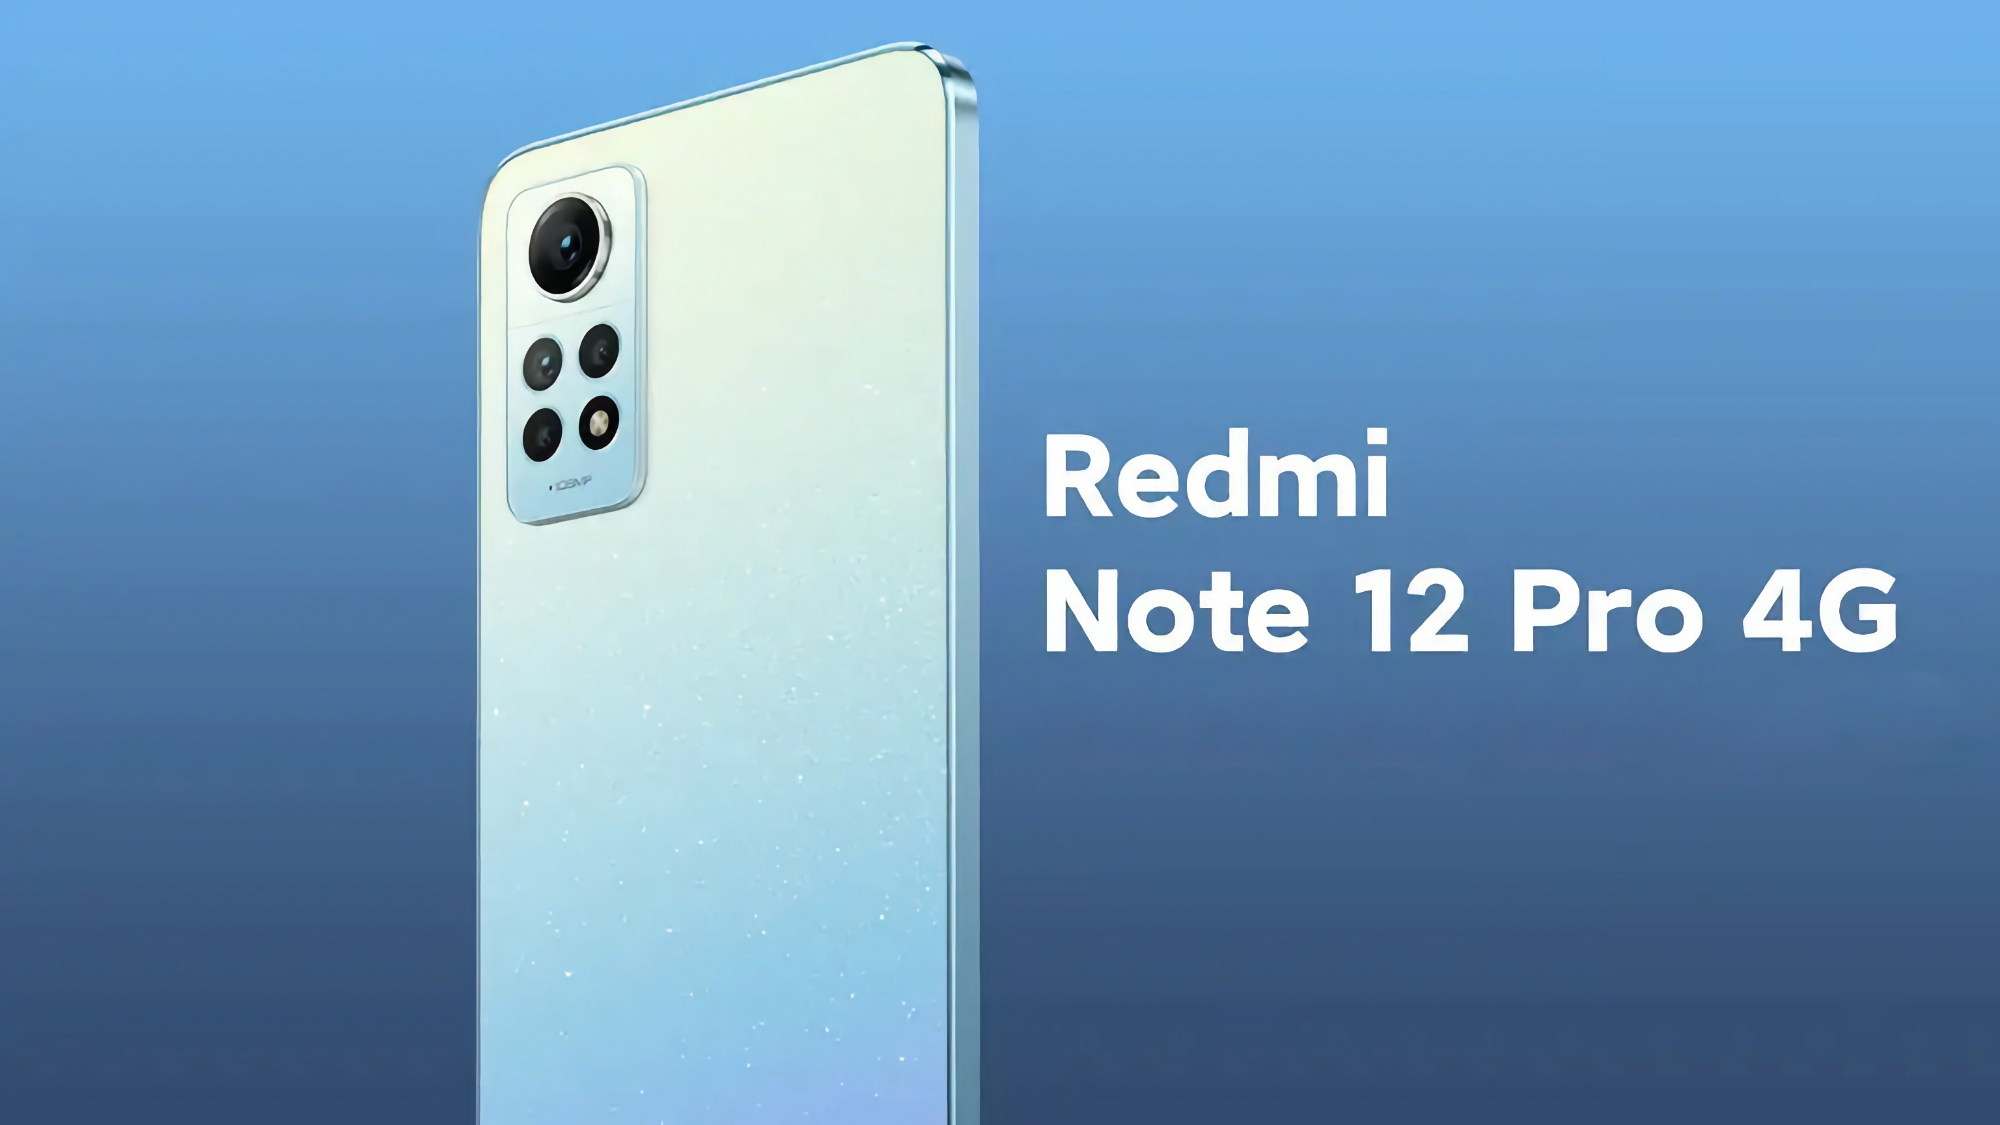 Po Redmi Note 12S: Redmi Note 12 Pro 4G z układem Snapdragon 732G i aparatem 108 MP zadebiutował w Europie